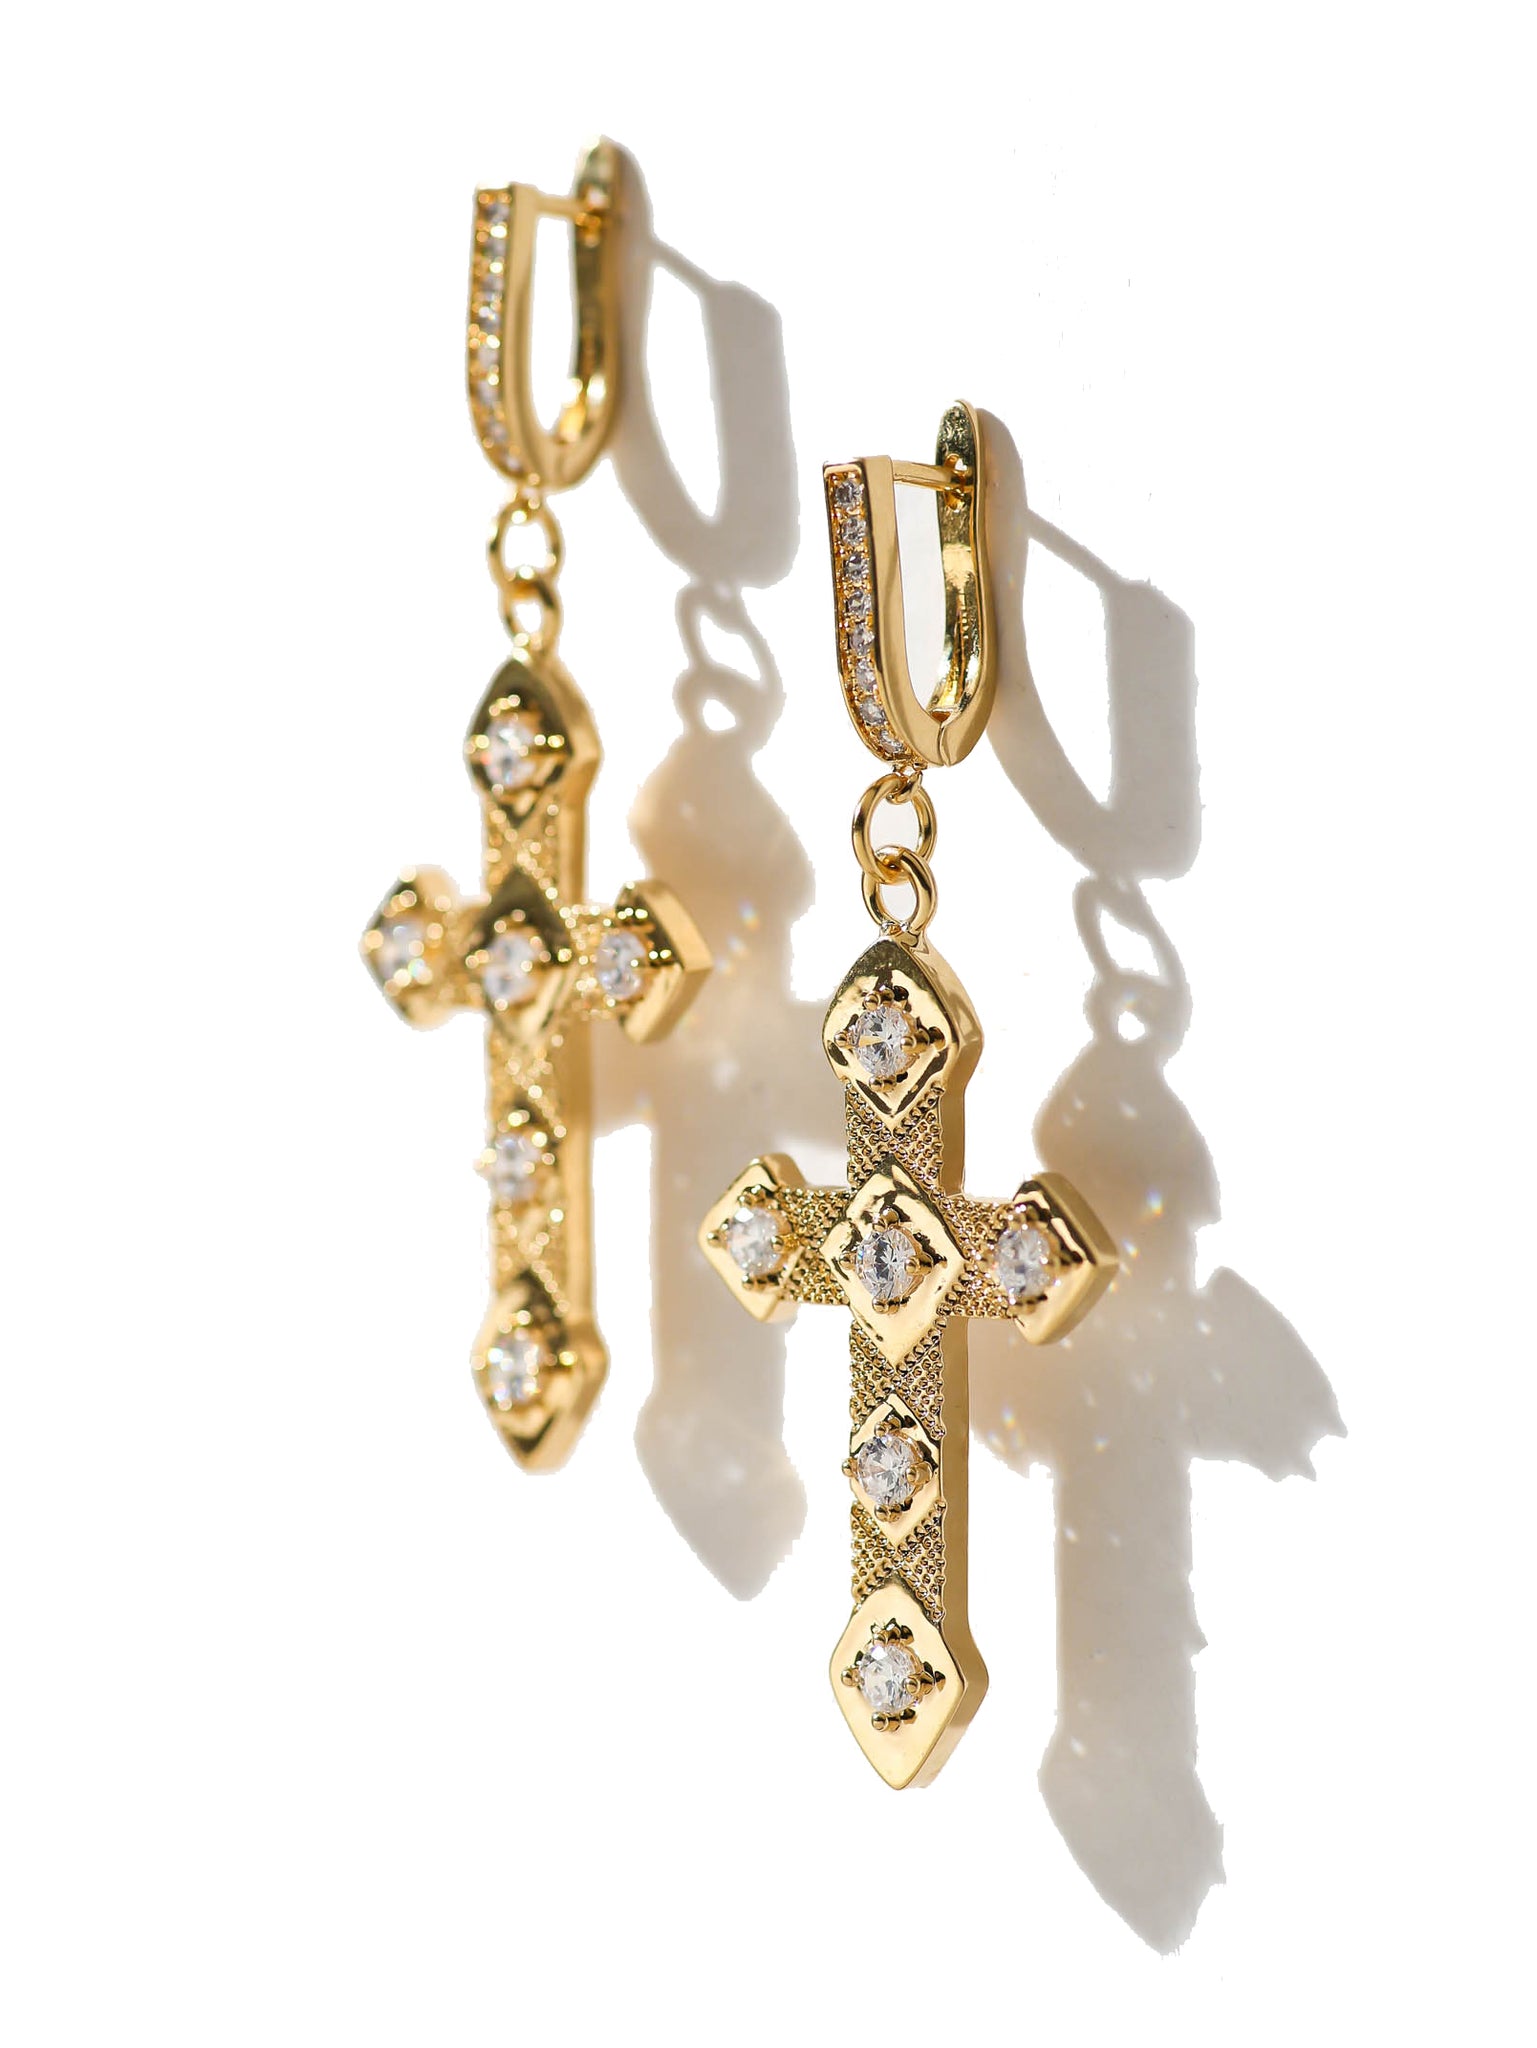 The Angel Cross Earrings